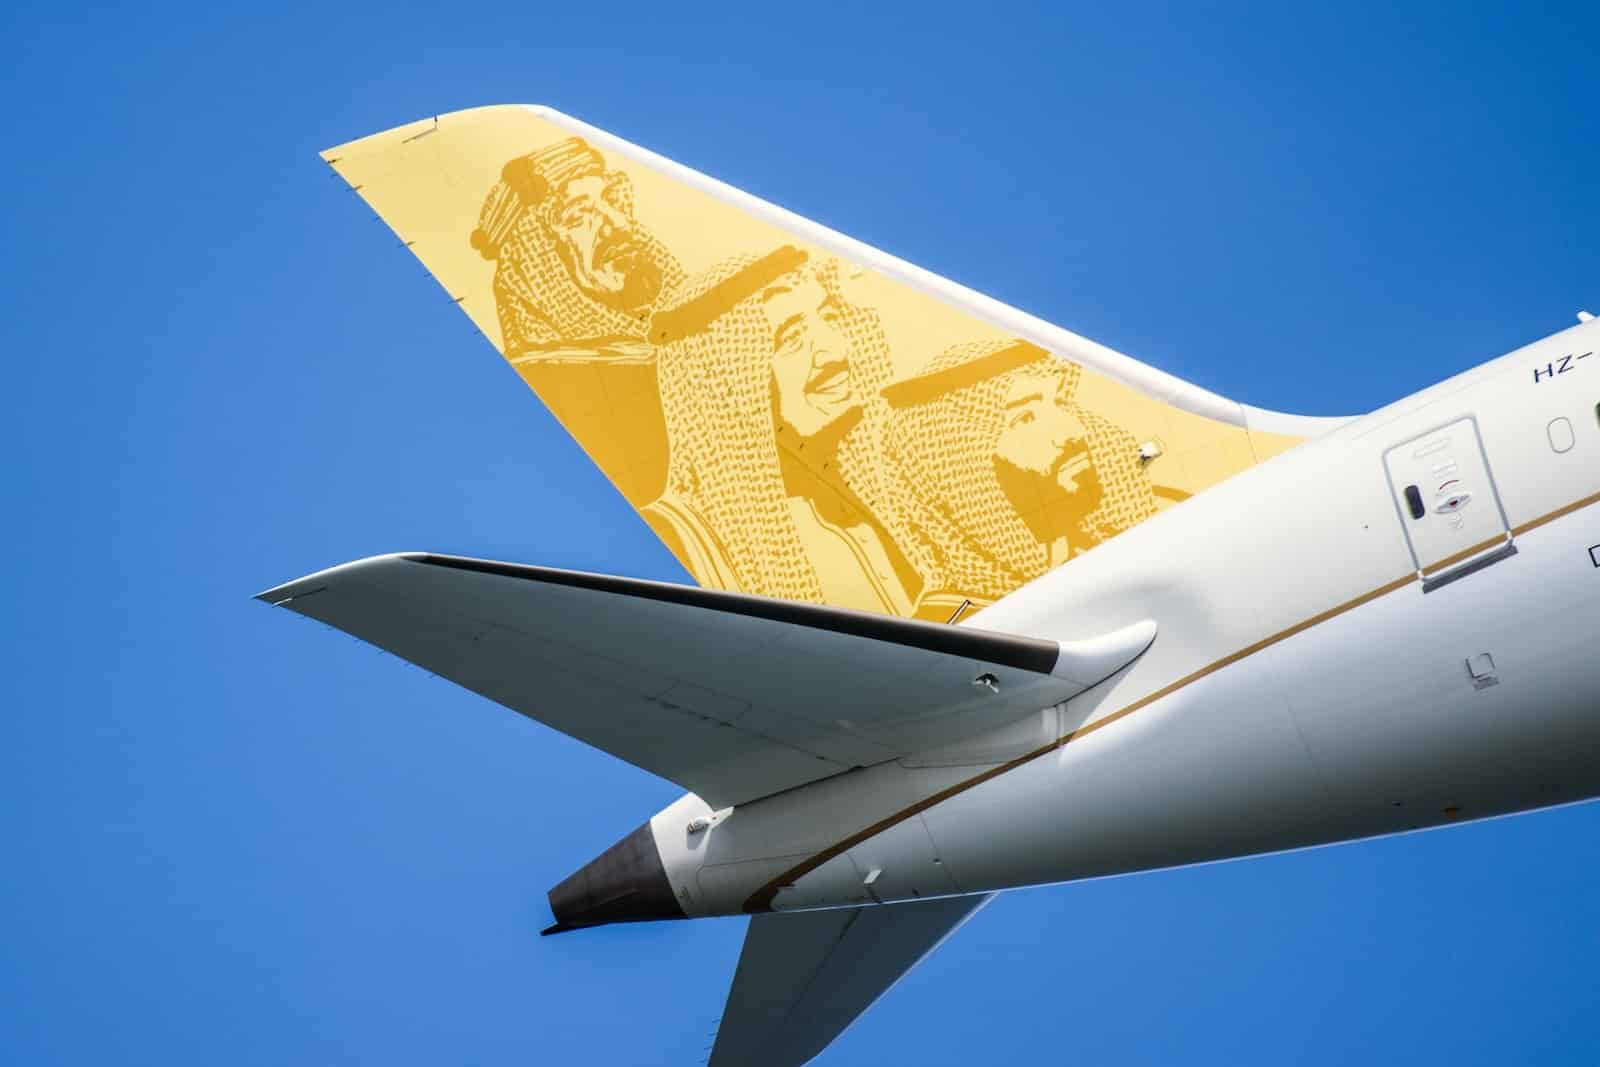 um close-up da extremidade traseira de um avião